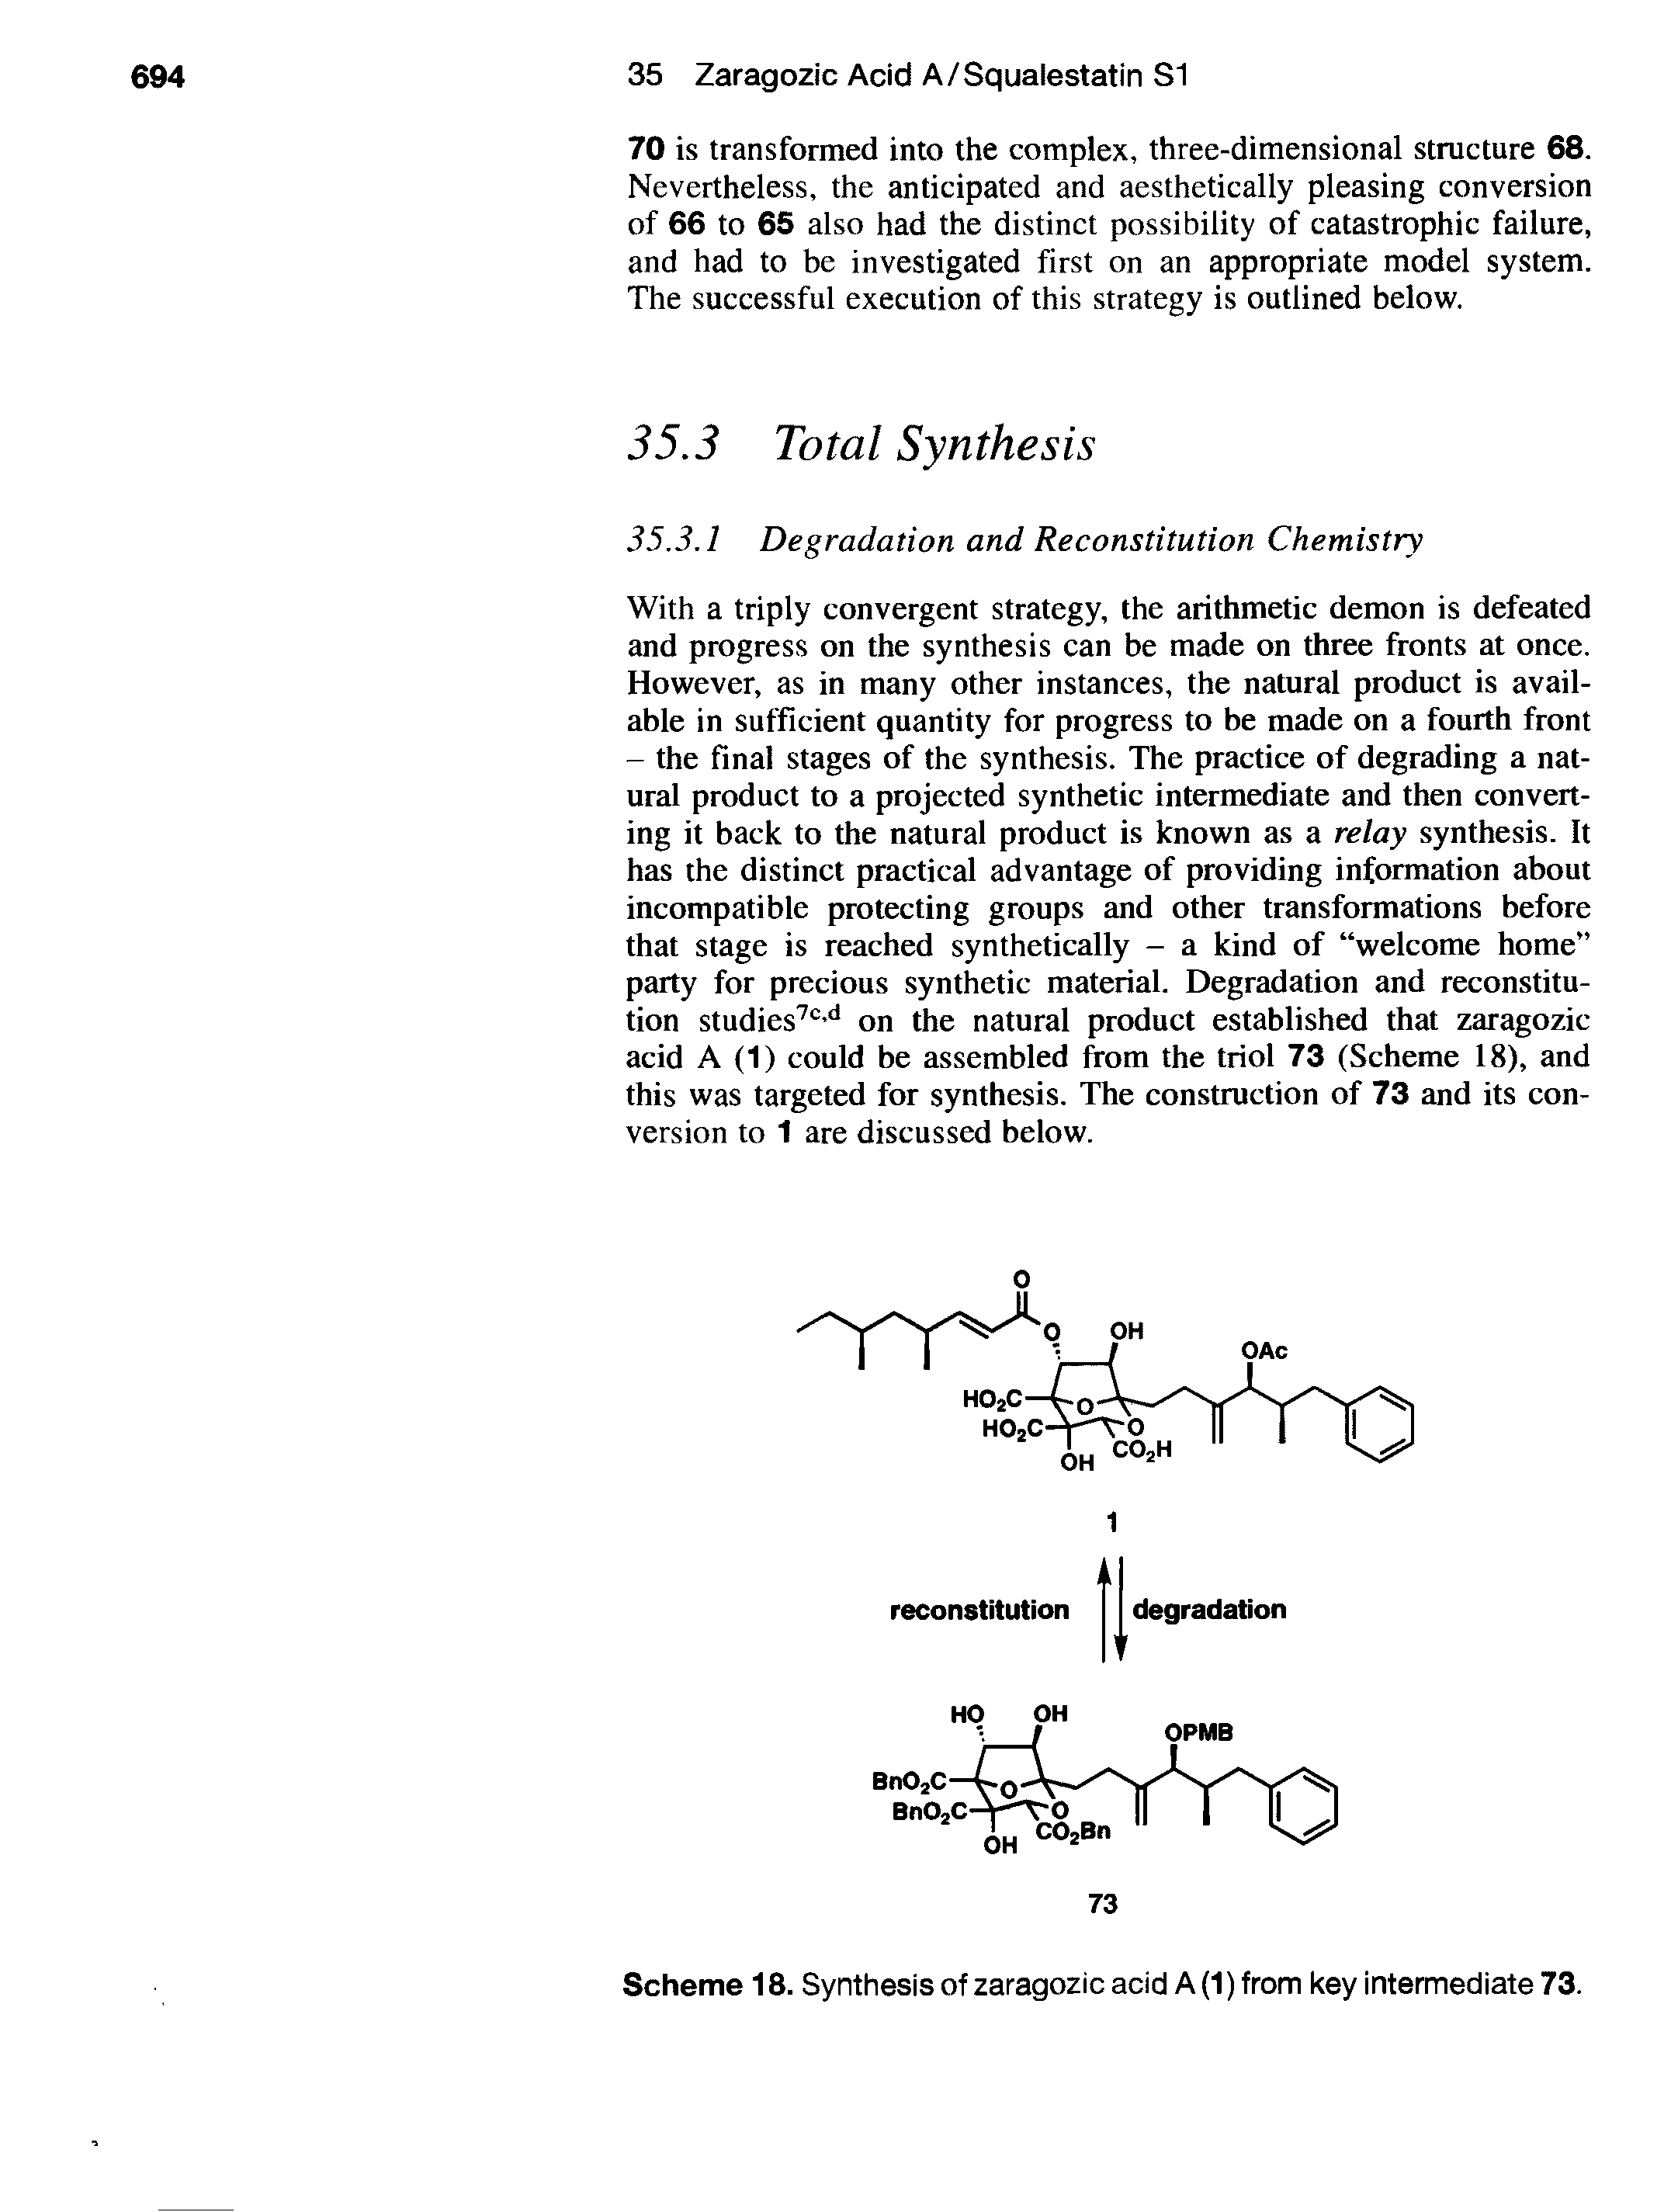 Scheme 18. Synthesis of zaragozic acid A (1) from key intermediate 73.